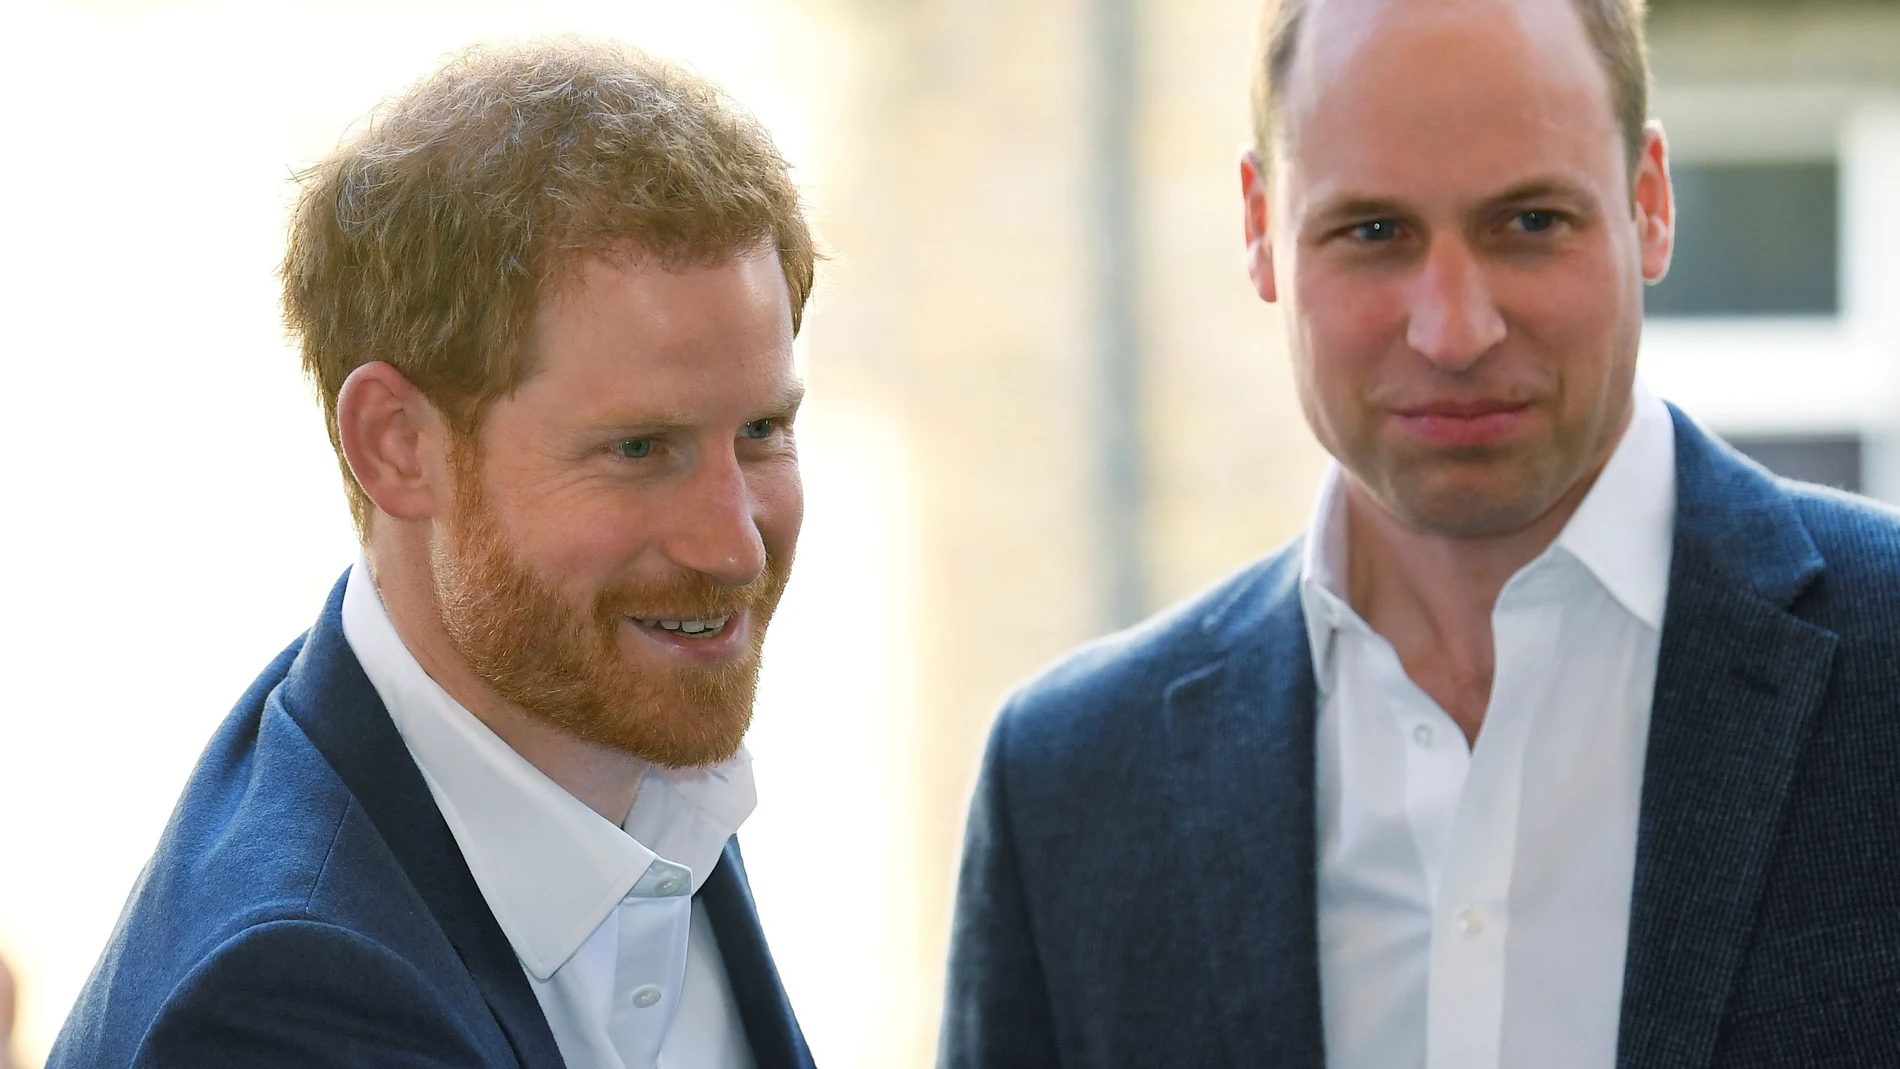 El príncipe Harry y el príncipe William se reencontrarán el próximo 1 de julio. REUTERS/Toby Melville/Pool/File Photo